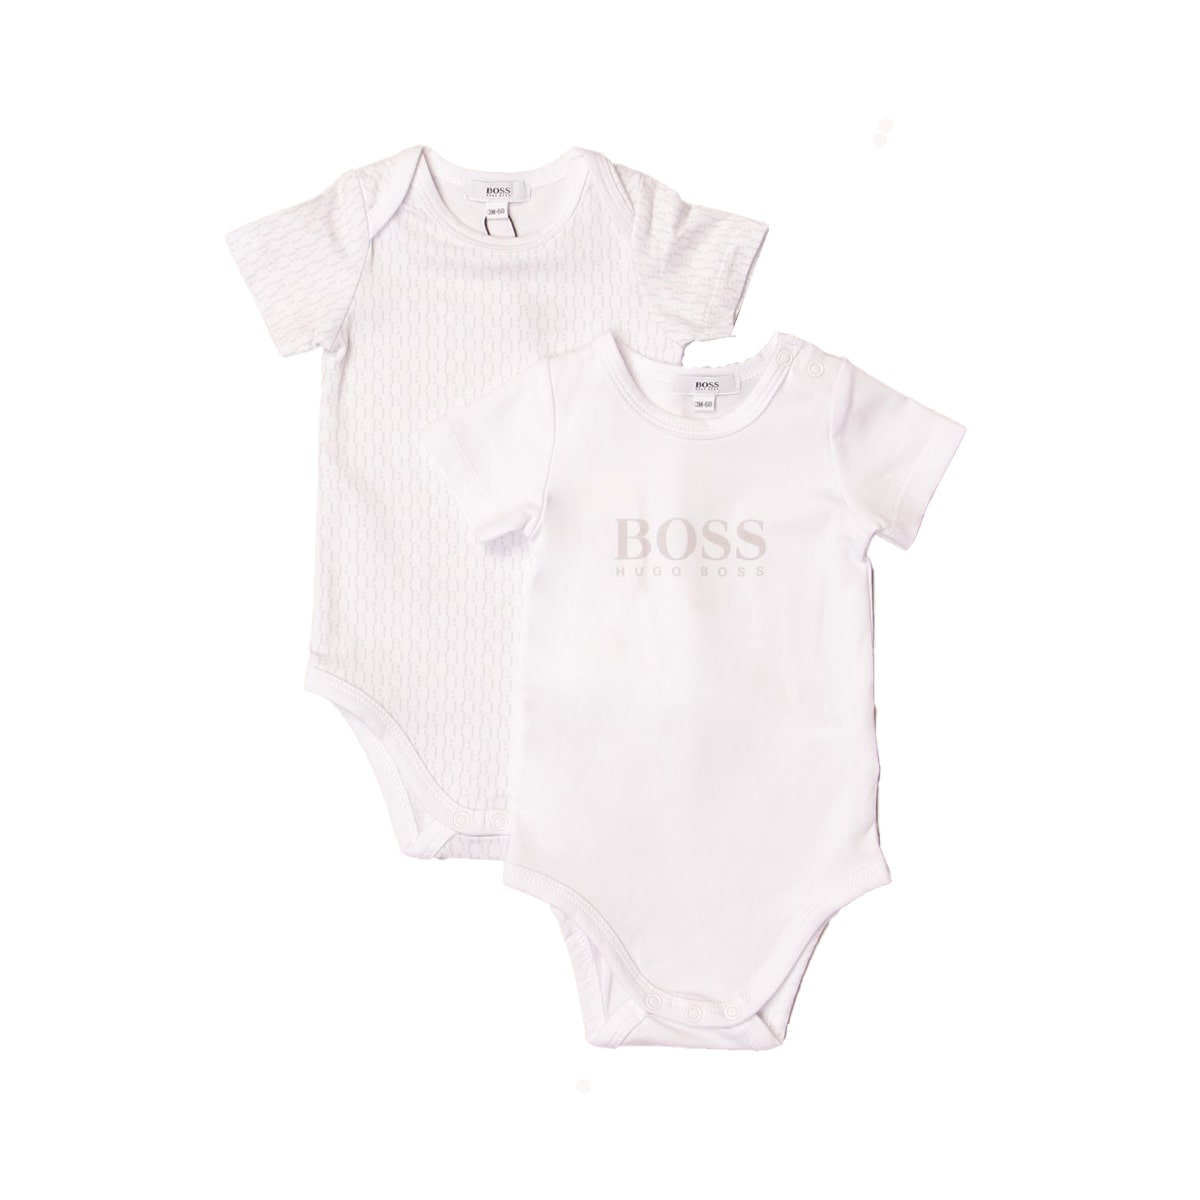 זוג בגדי גוף HUGO BOSS לוגו באמצע לתינוקות